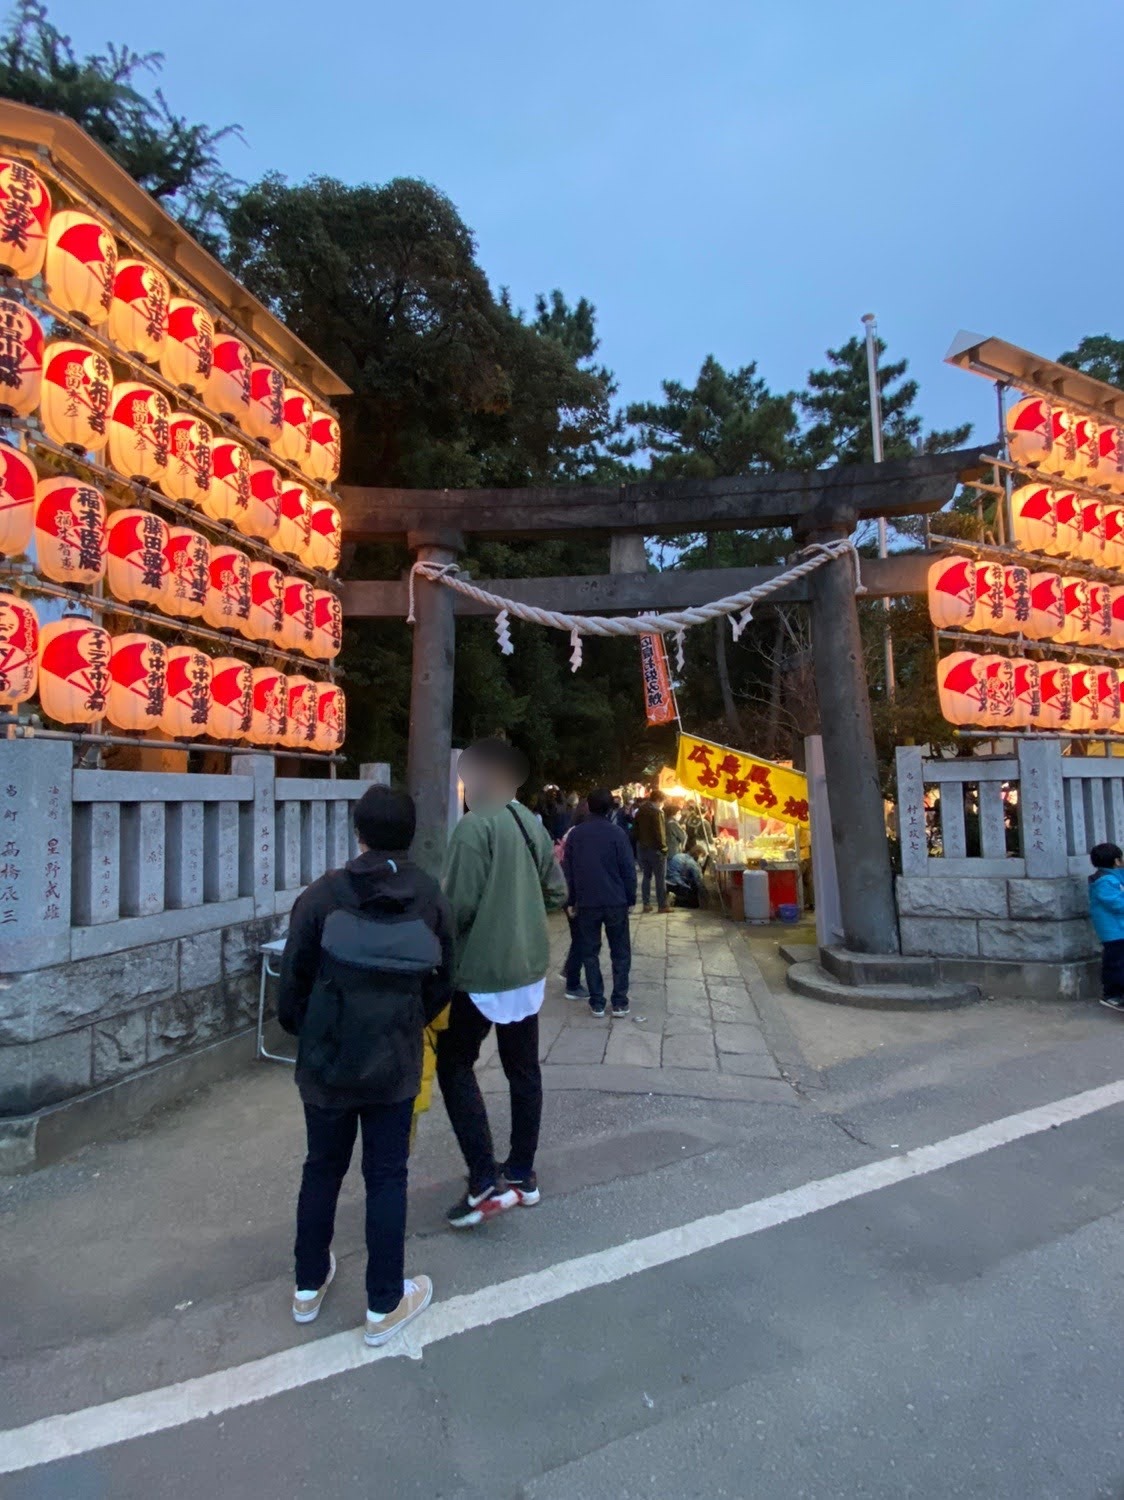 花畑「大鷲神社」で開催される「酉の市」の様子　鳥居の横には提灯がずらりと並びます